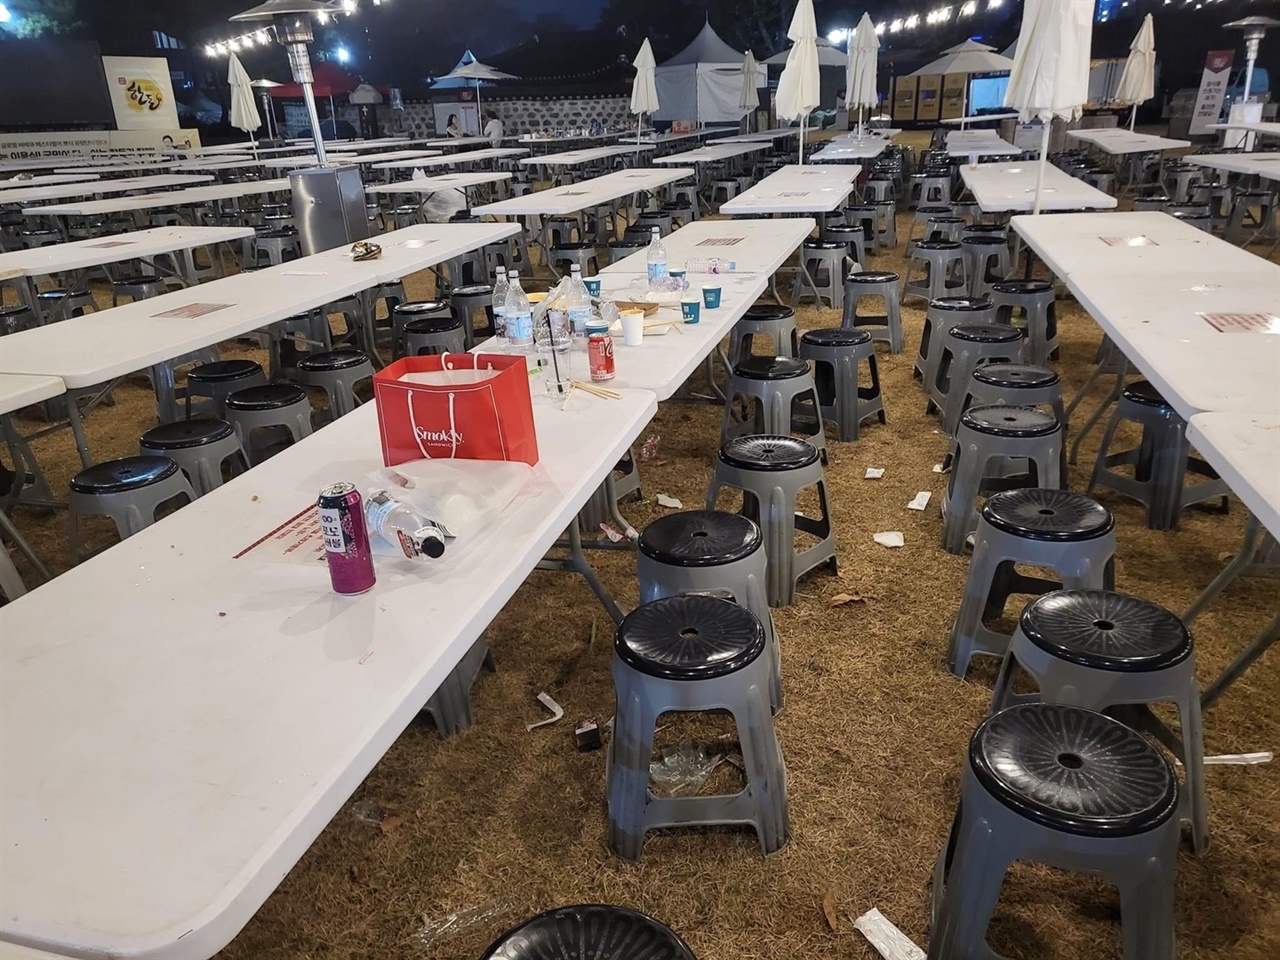 홍성군에서 지난 3일부터 5일까지 3일간 ‘제1회 글로벌바베큐축제’를 개최하고 있는 가운데, 1회용품을 사용해 문제로 지적되고 있다. 테이블과 바닥에 버려진 쓰레기.